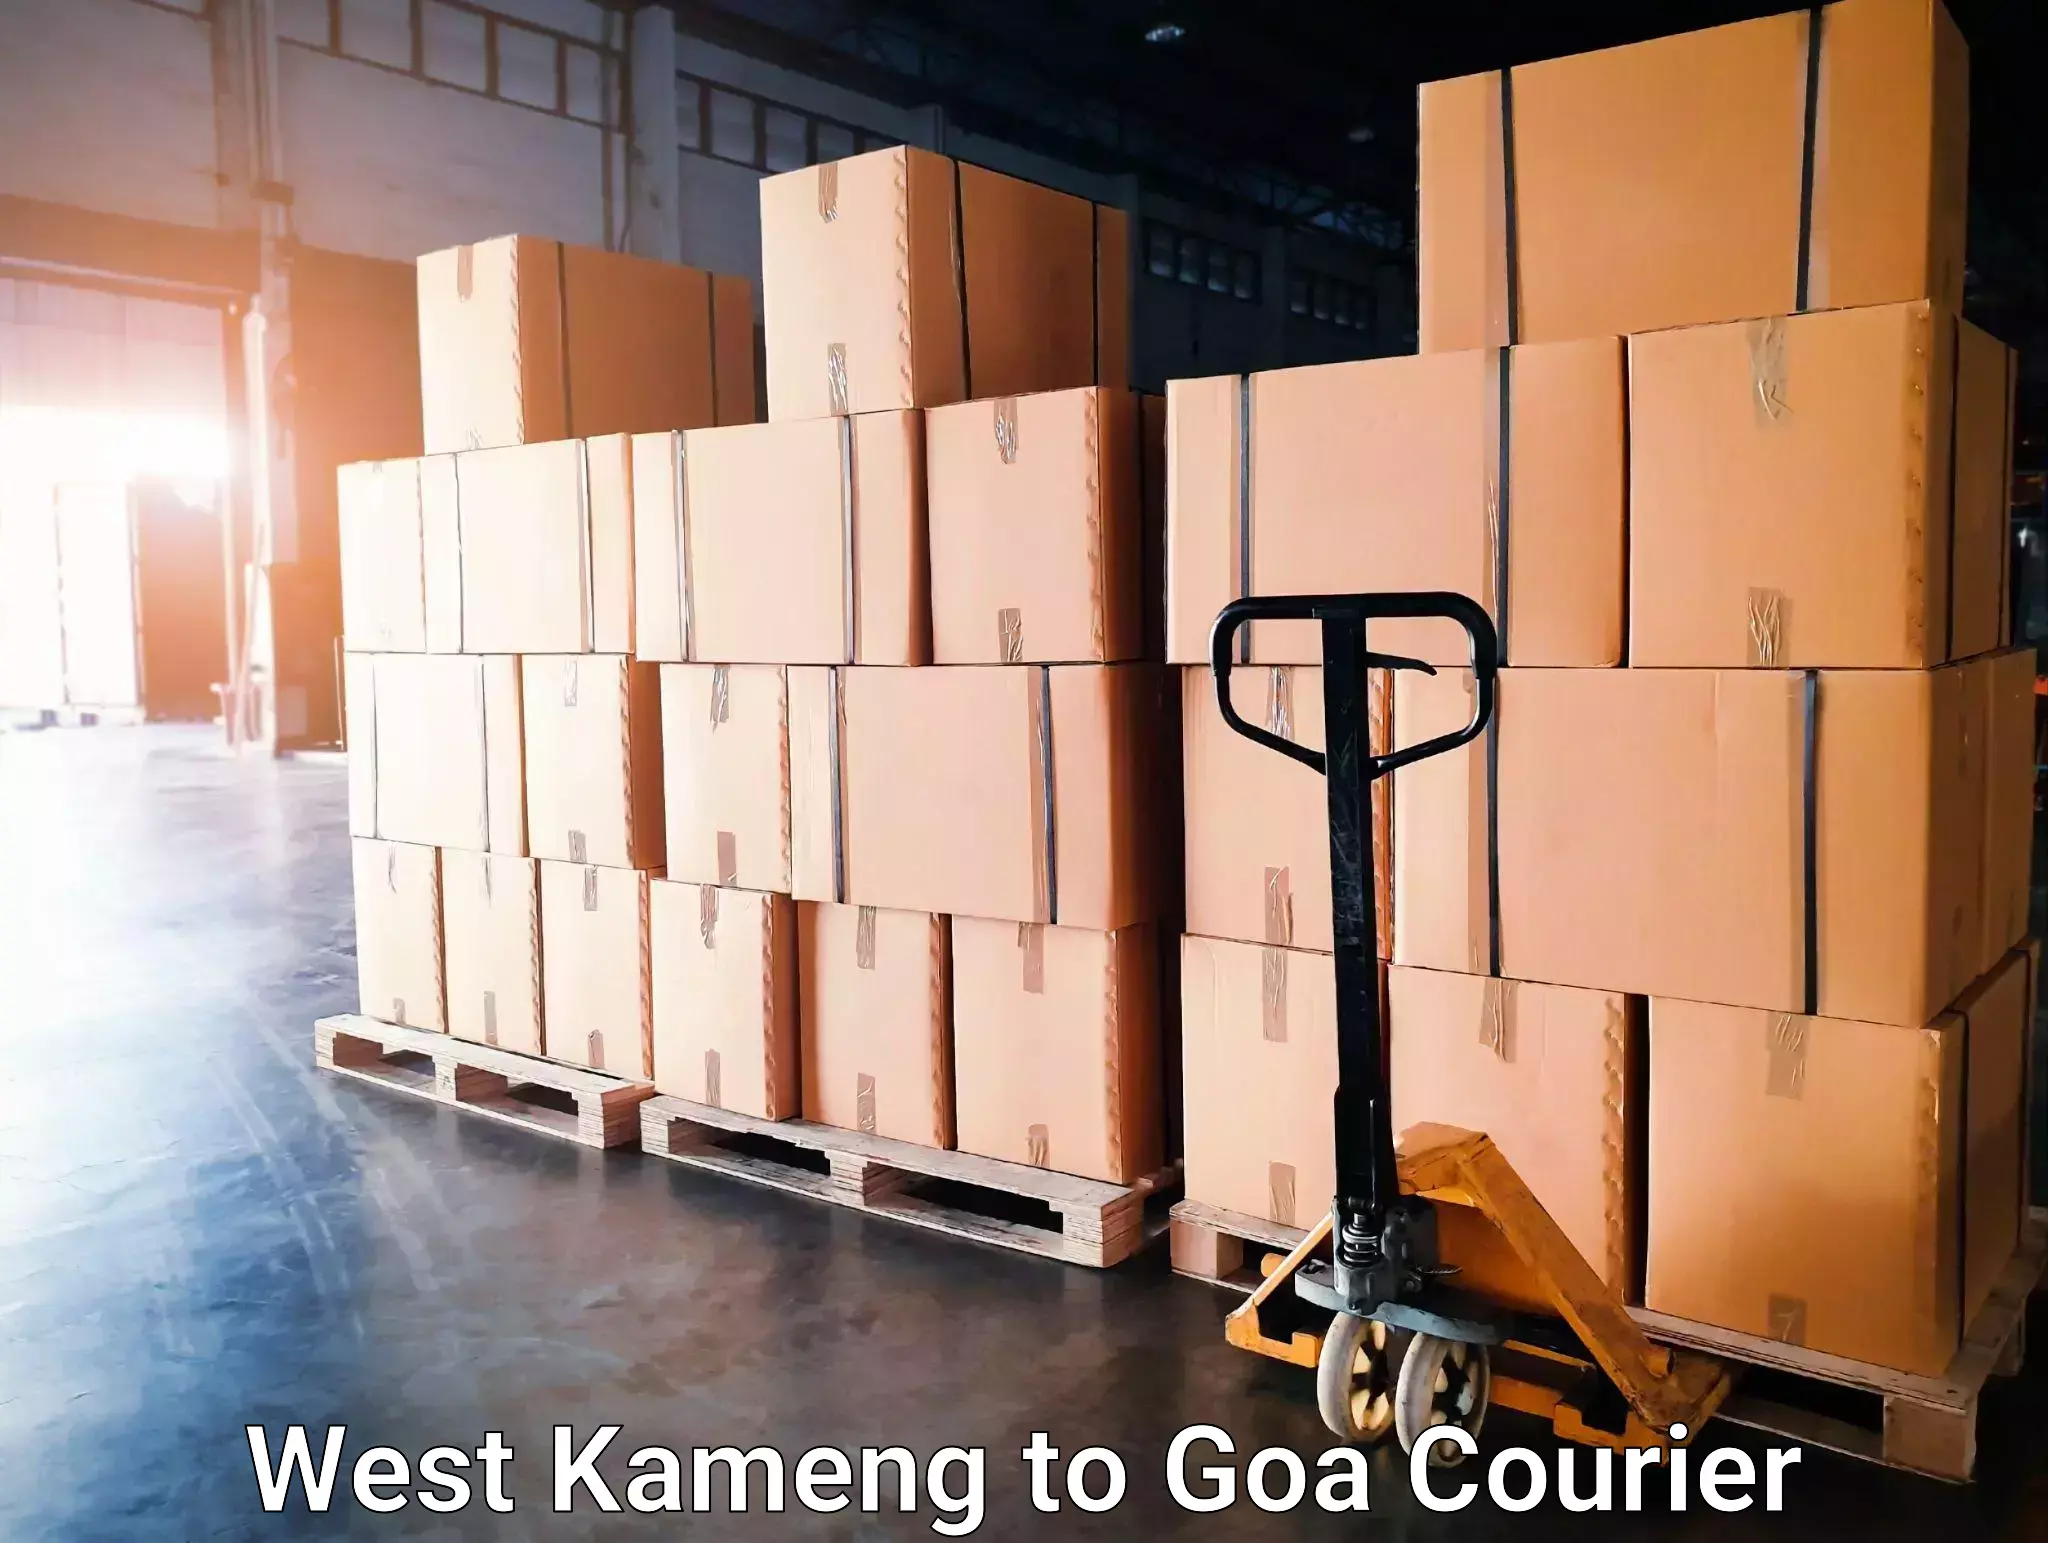 Doorstep delivery service West Kameng to Ponda